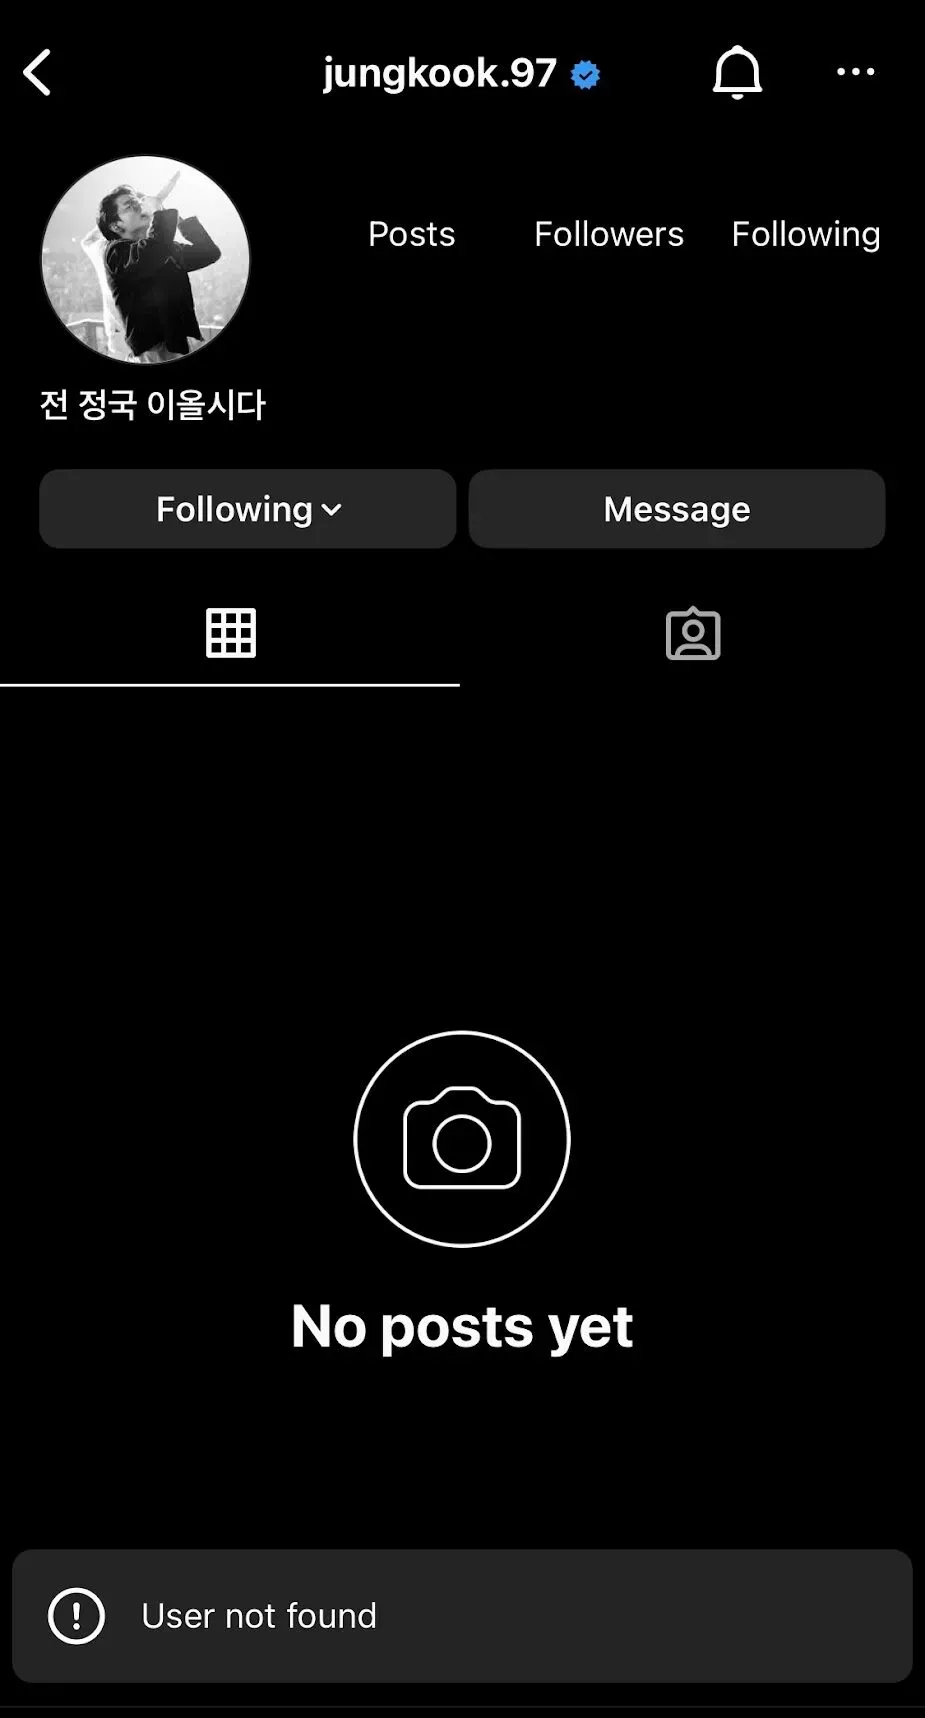 compte instagram bts jungkook